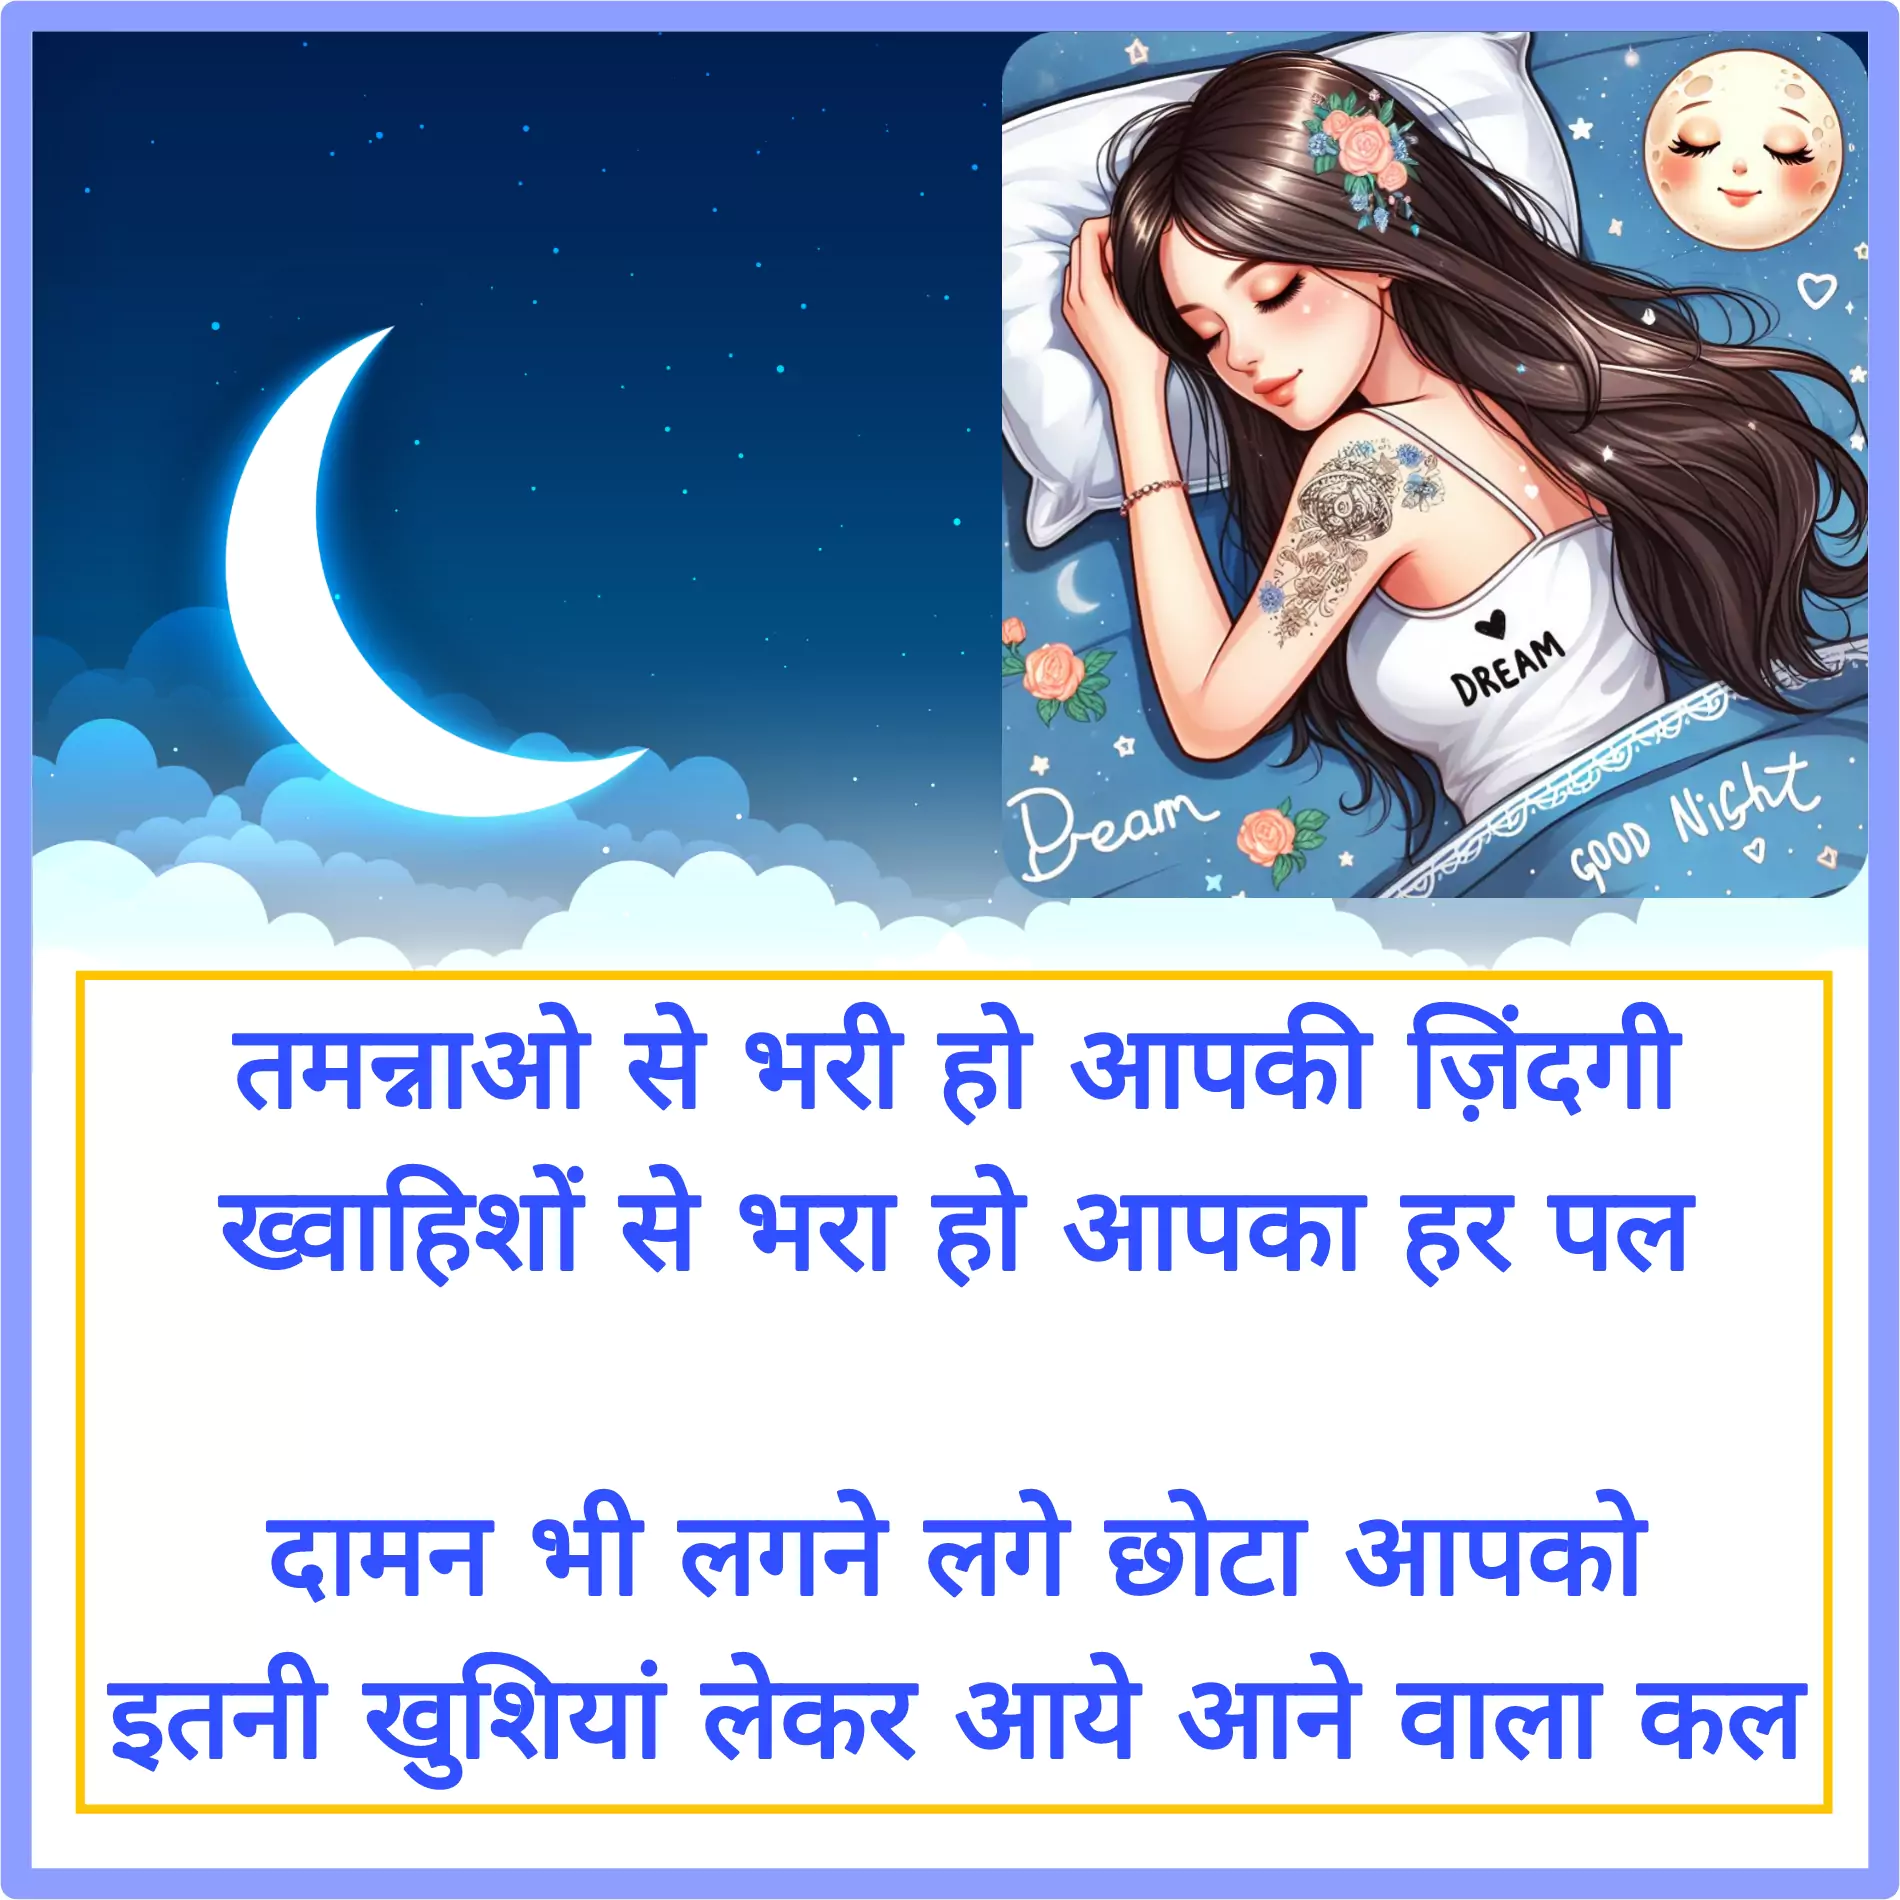 hindi shayari images in hindi for good night